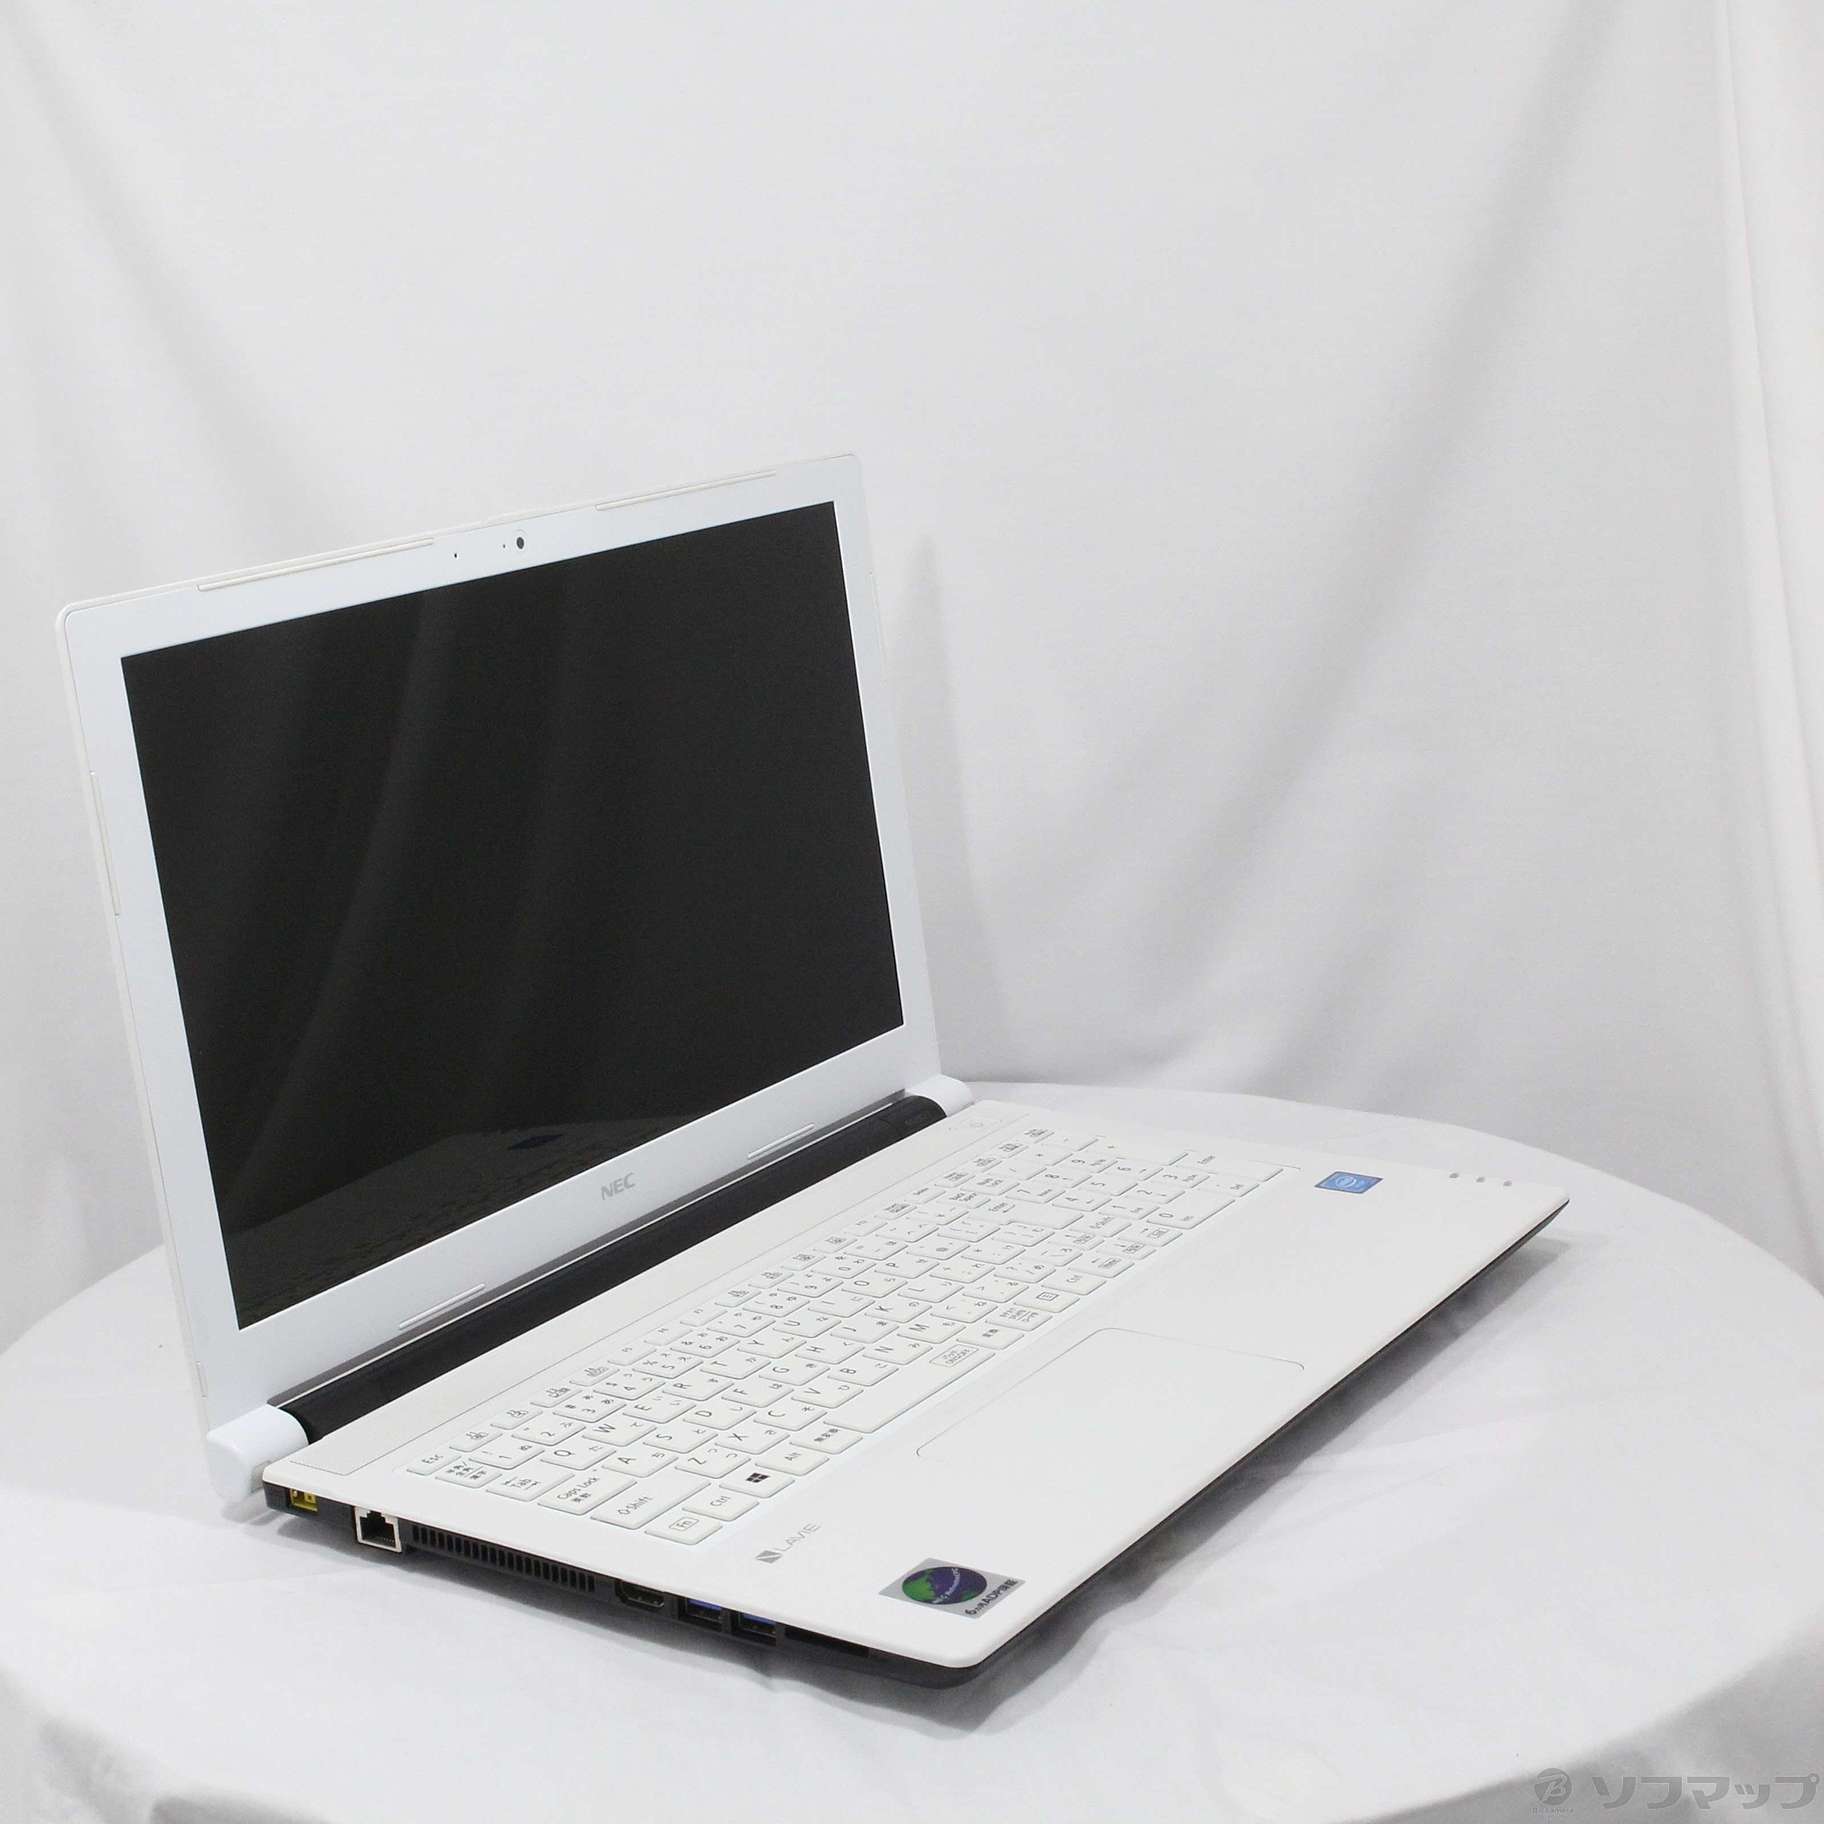 セール対象品 LaVie Note Standard PC-NS100F2W-H4 ホワイト 〔NEC Refreshed PC〕 〔Windows  10〕 ≪メーカー保証あり≫ ［Celeron 3855U (1.6GHz)／4GB／HDD500GB／15.6インチワイド］